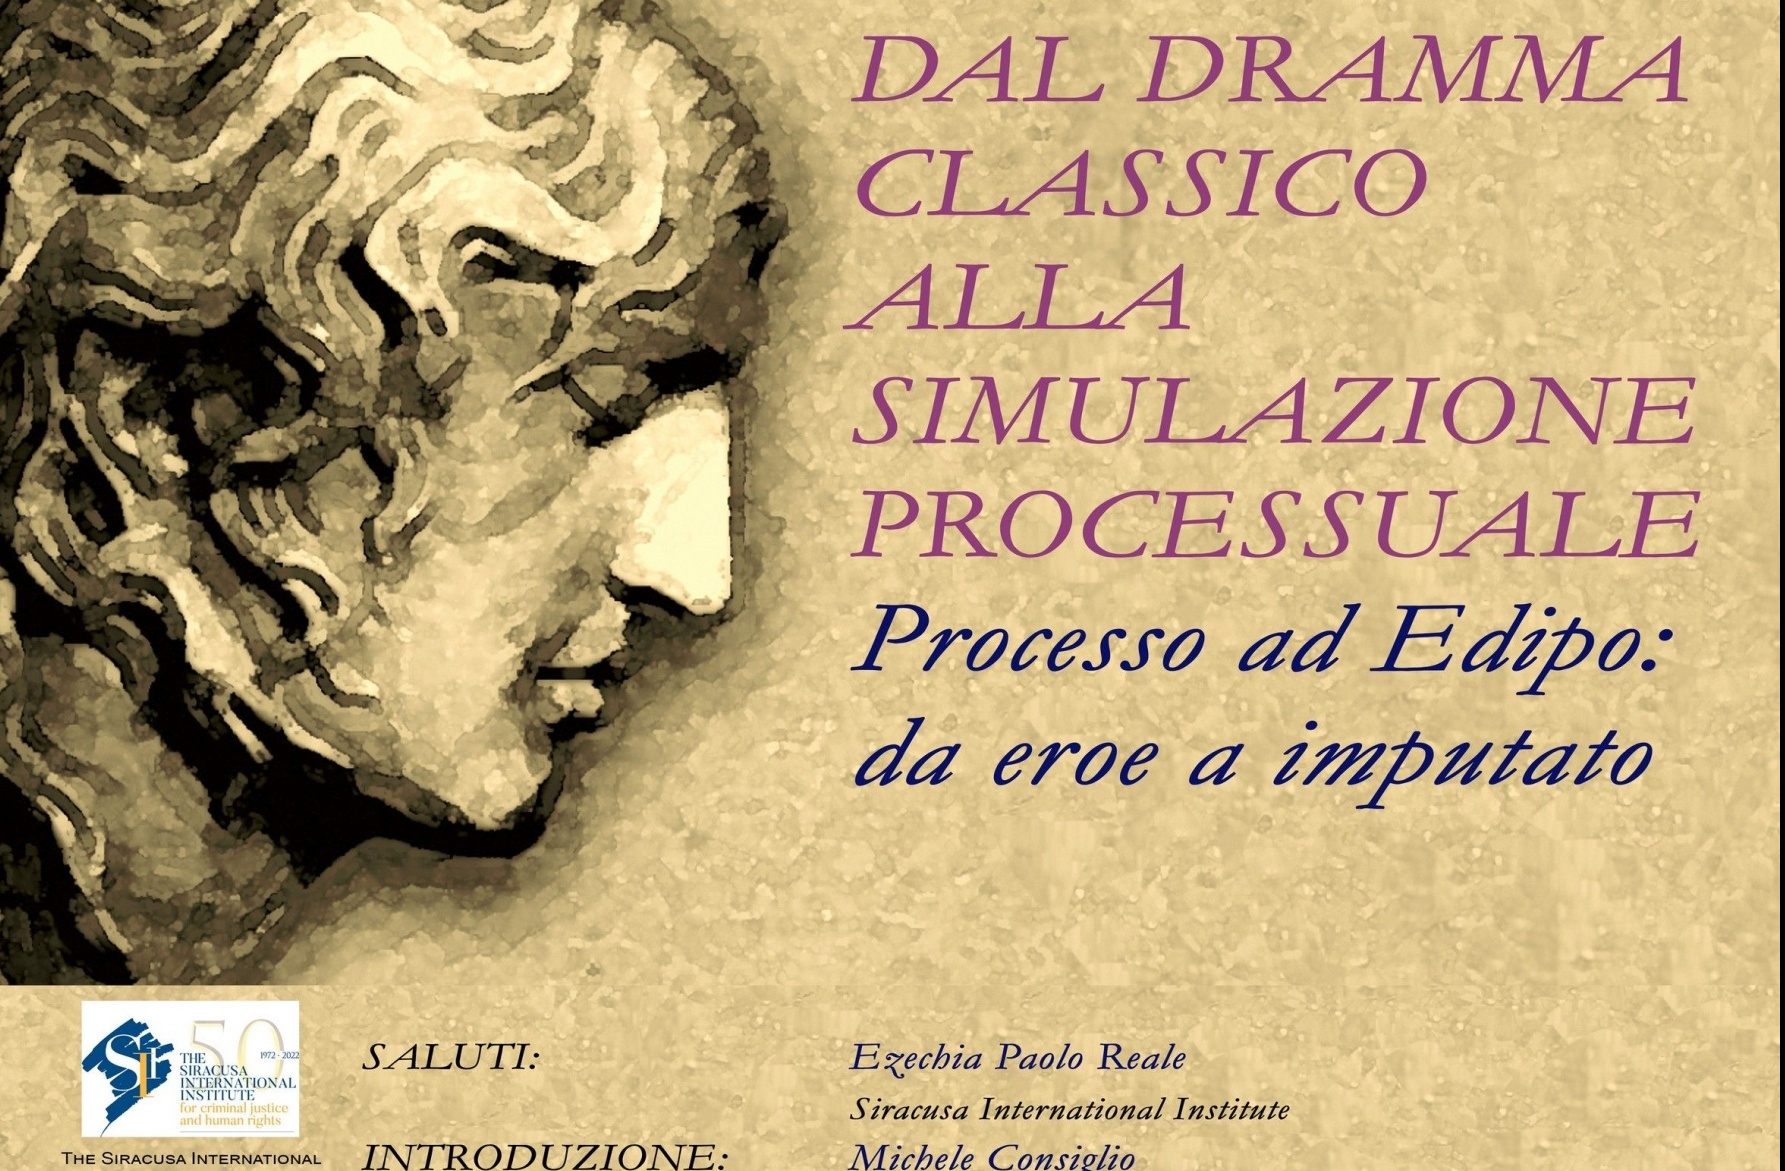 Spettacoli classici al Teatro Greco di Siracusa: presentato il programma